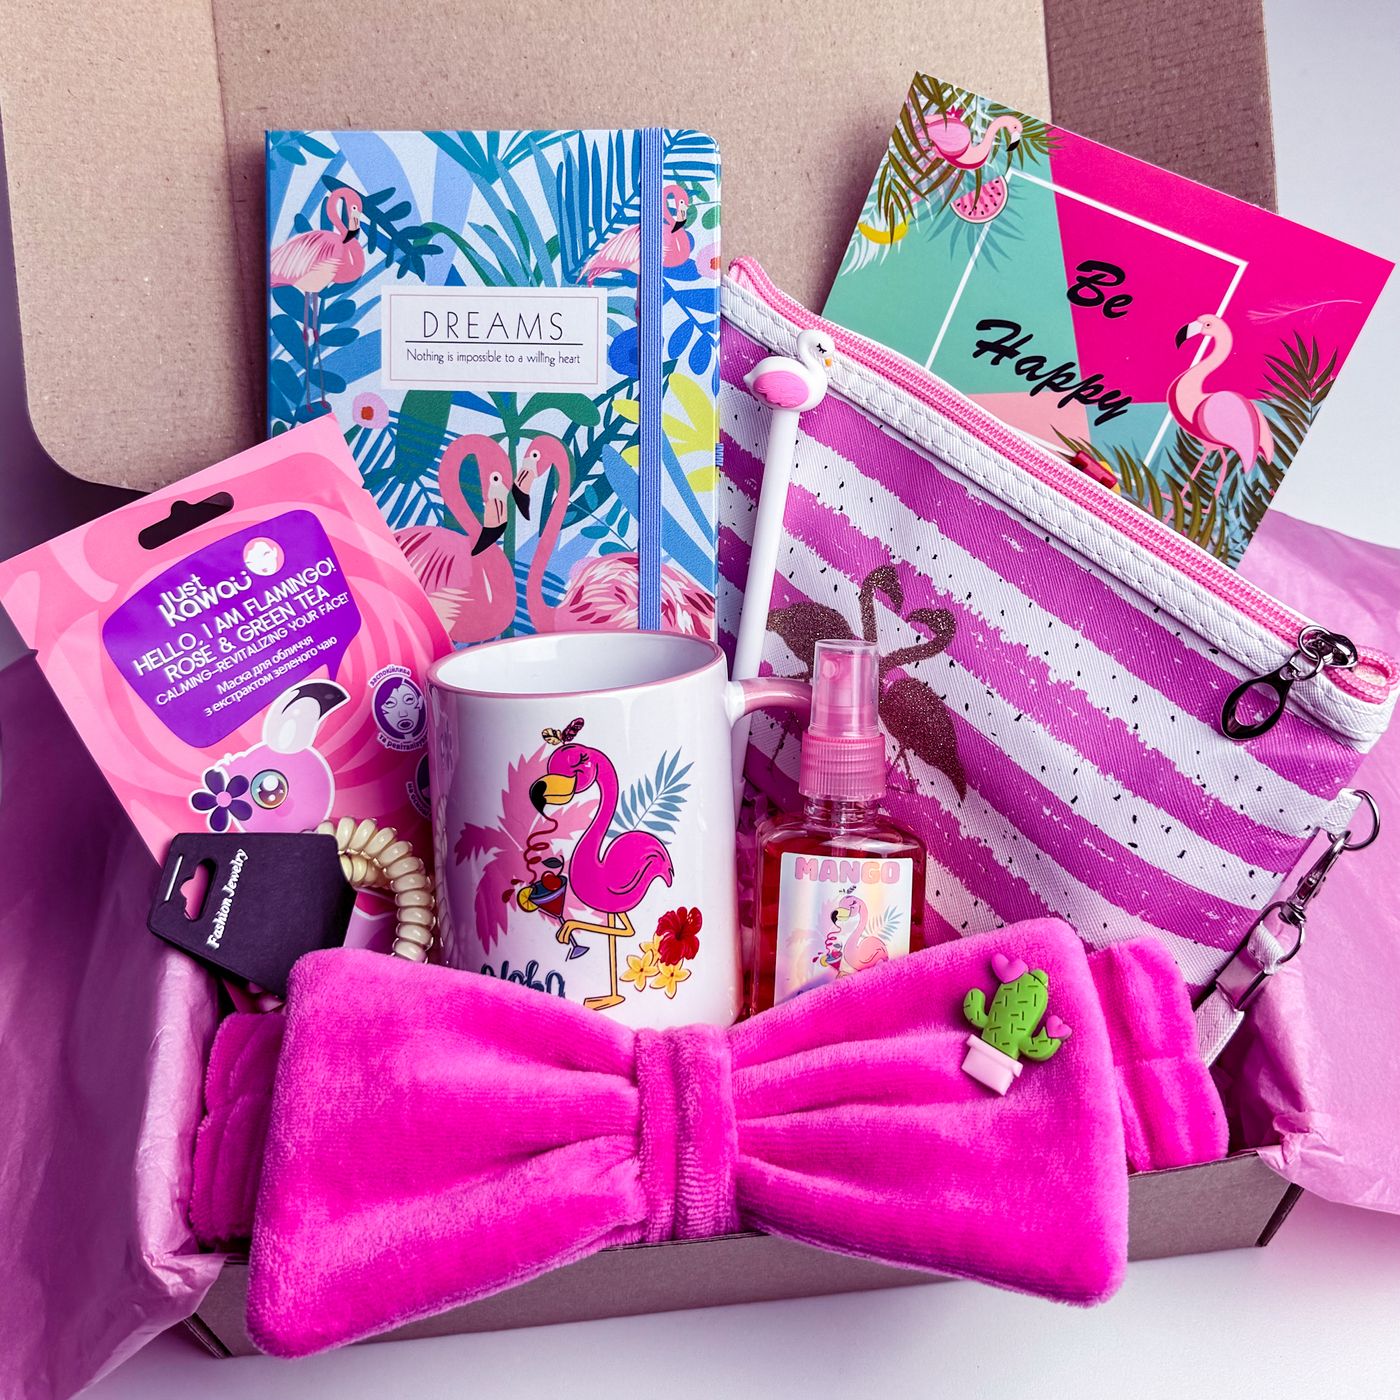 Подарок для девочки девушки «Flamingo Box №8» от WowBoxes